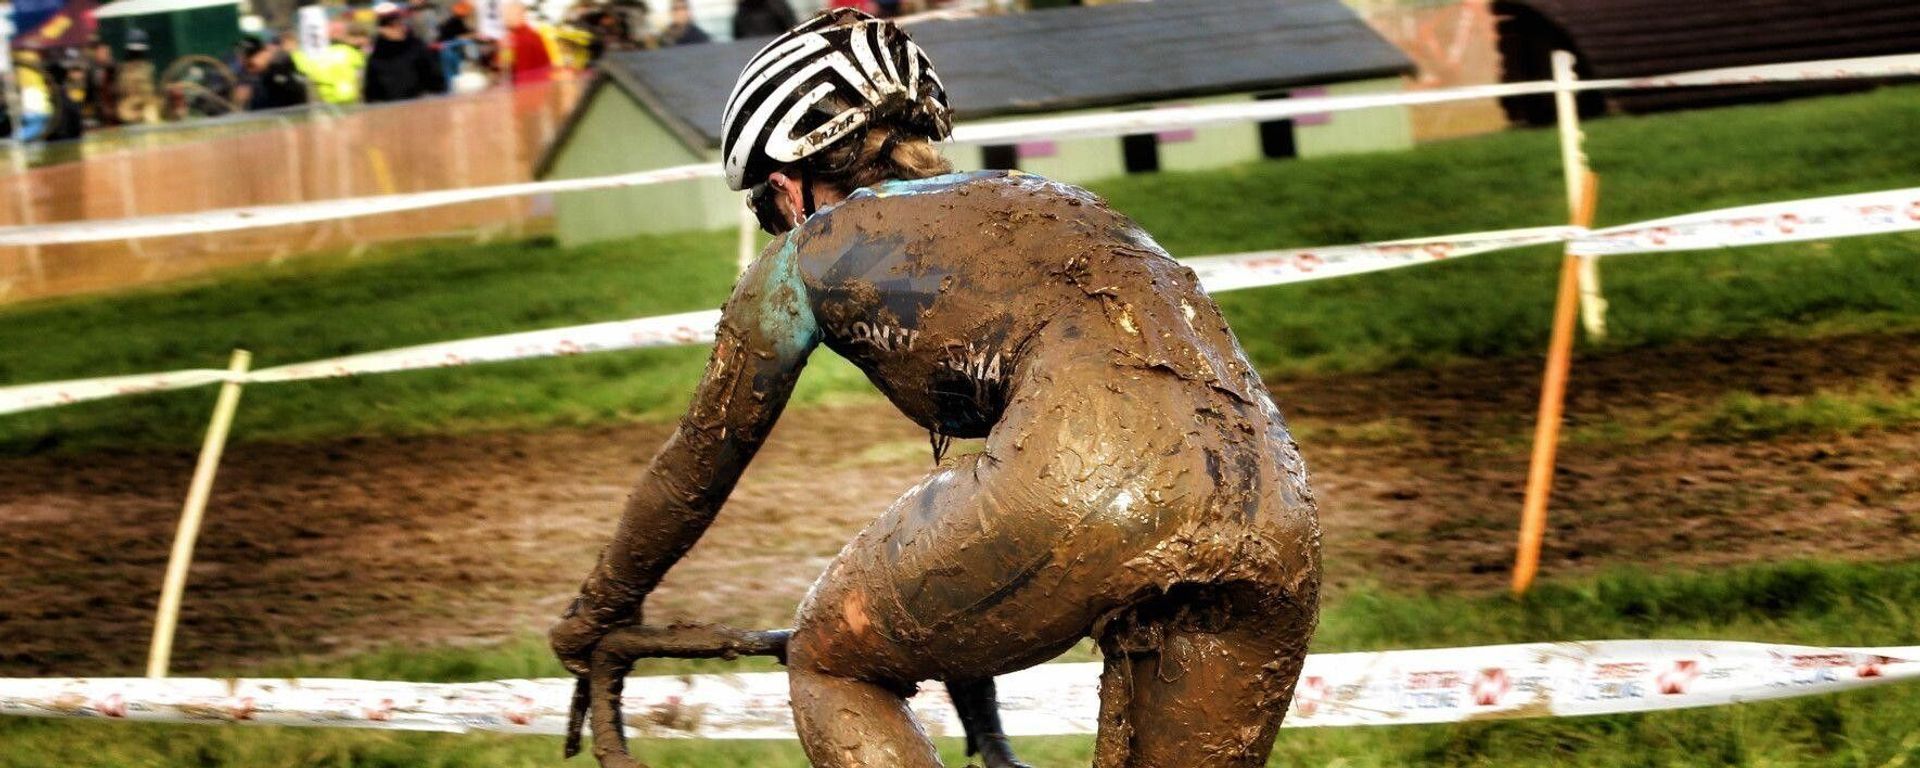 How to Race Cyclocross in Belgium